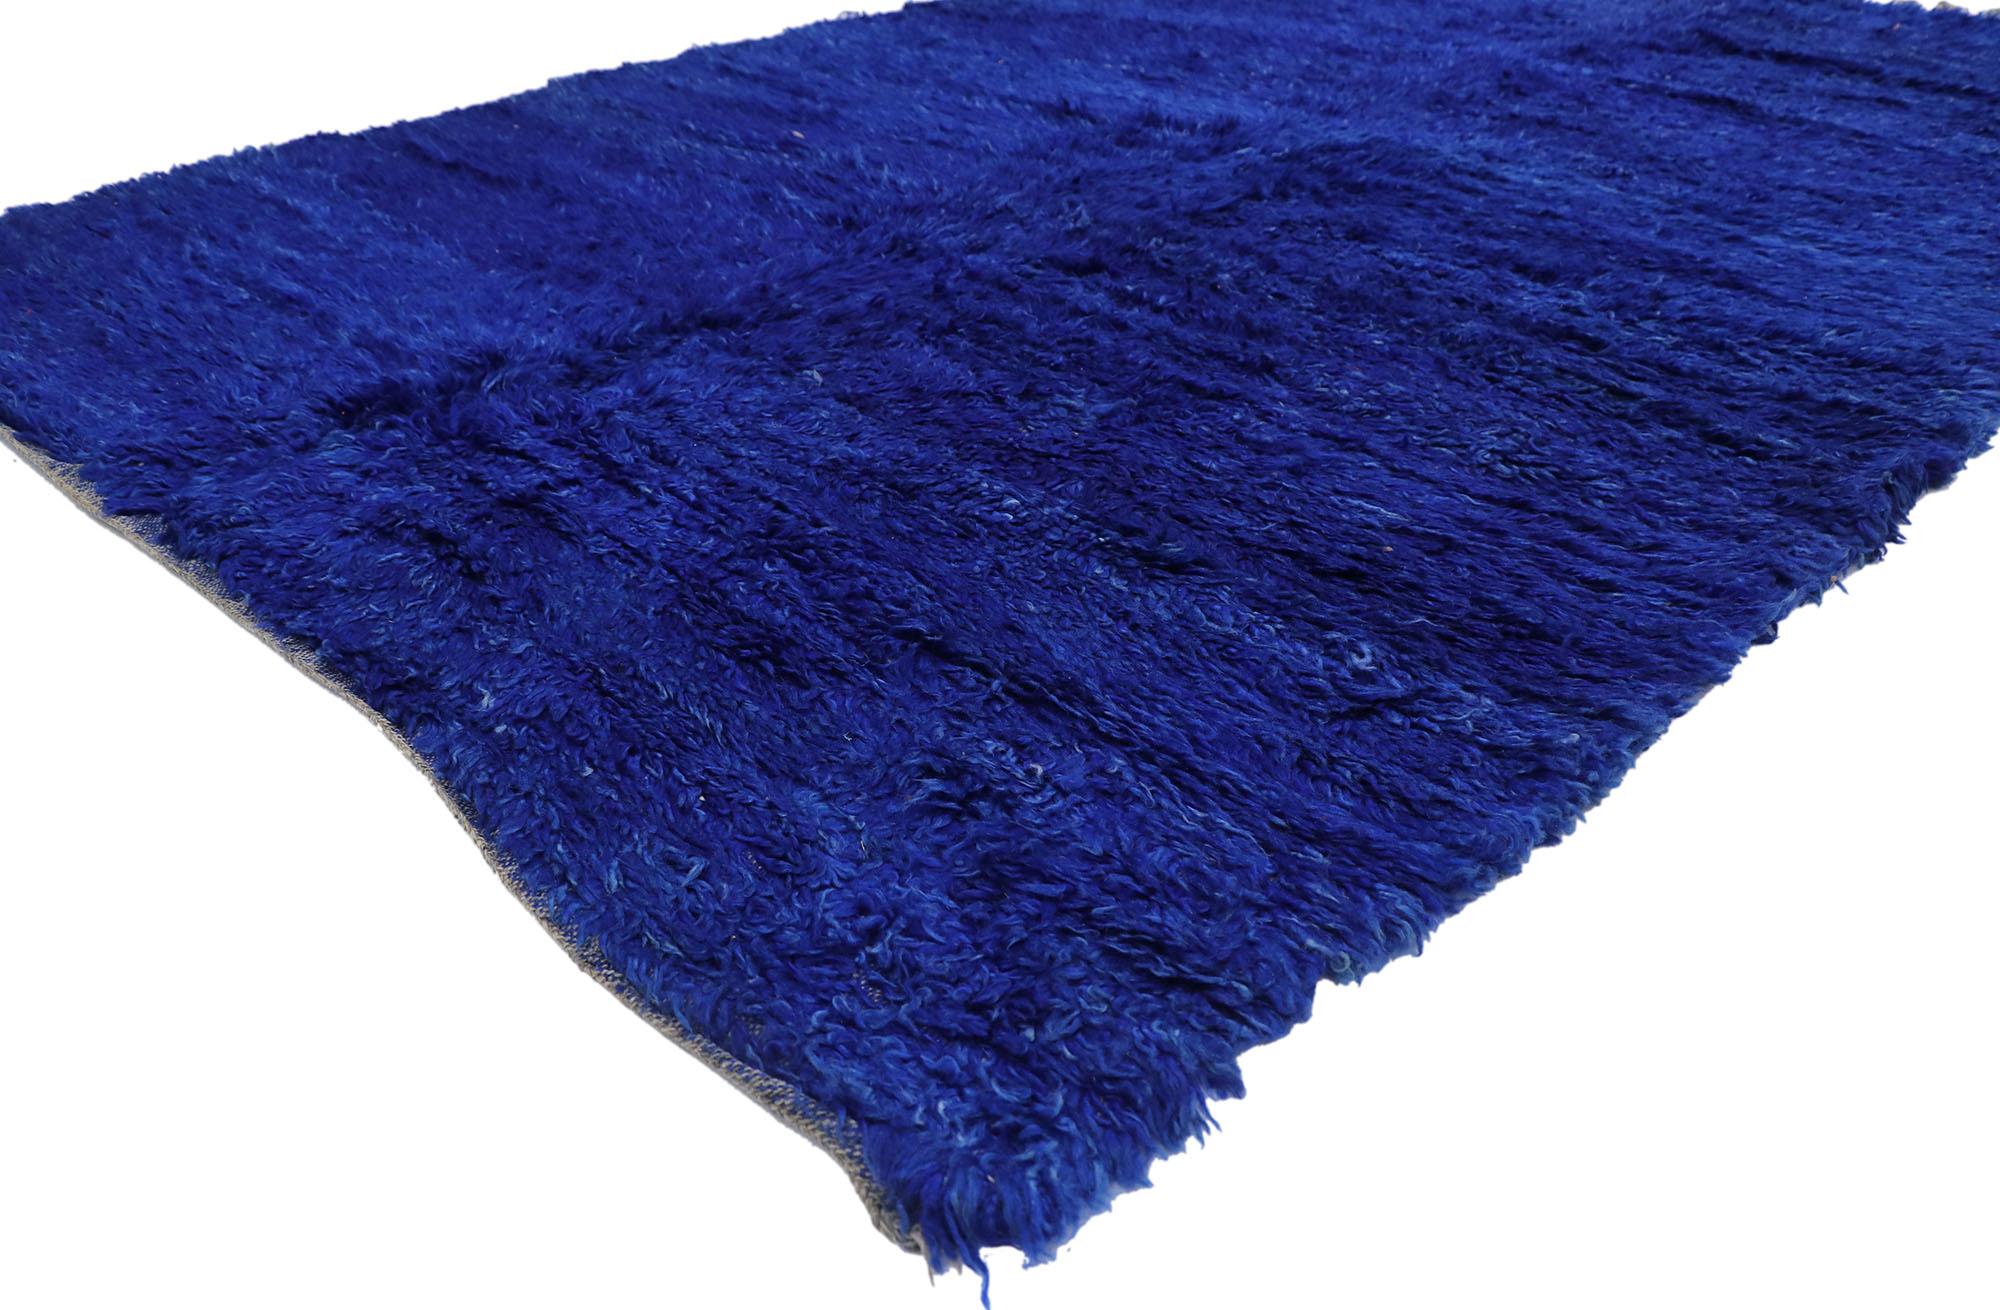 21305 Tapis marocain Beni Mrirt bleu vintage, 06'03 x 09'07. Les tapis Beni Mrirt incarnent une tradition précieuse du tissage marocain, réputée pour sa texture luxueuse, ses motifs géométriques et ses tons de terre apaisants. Fabriqués par des